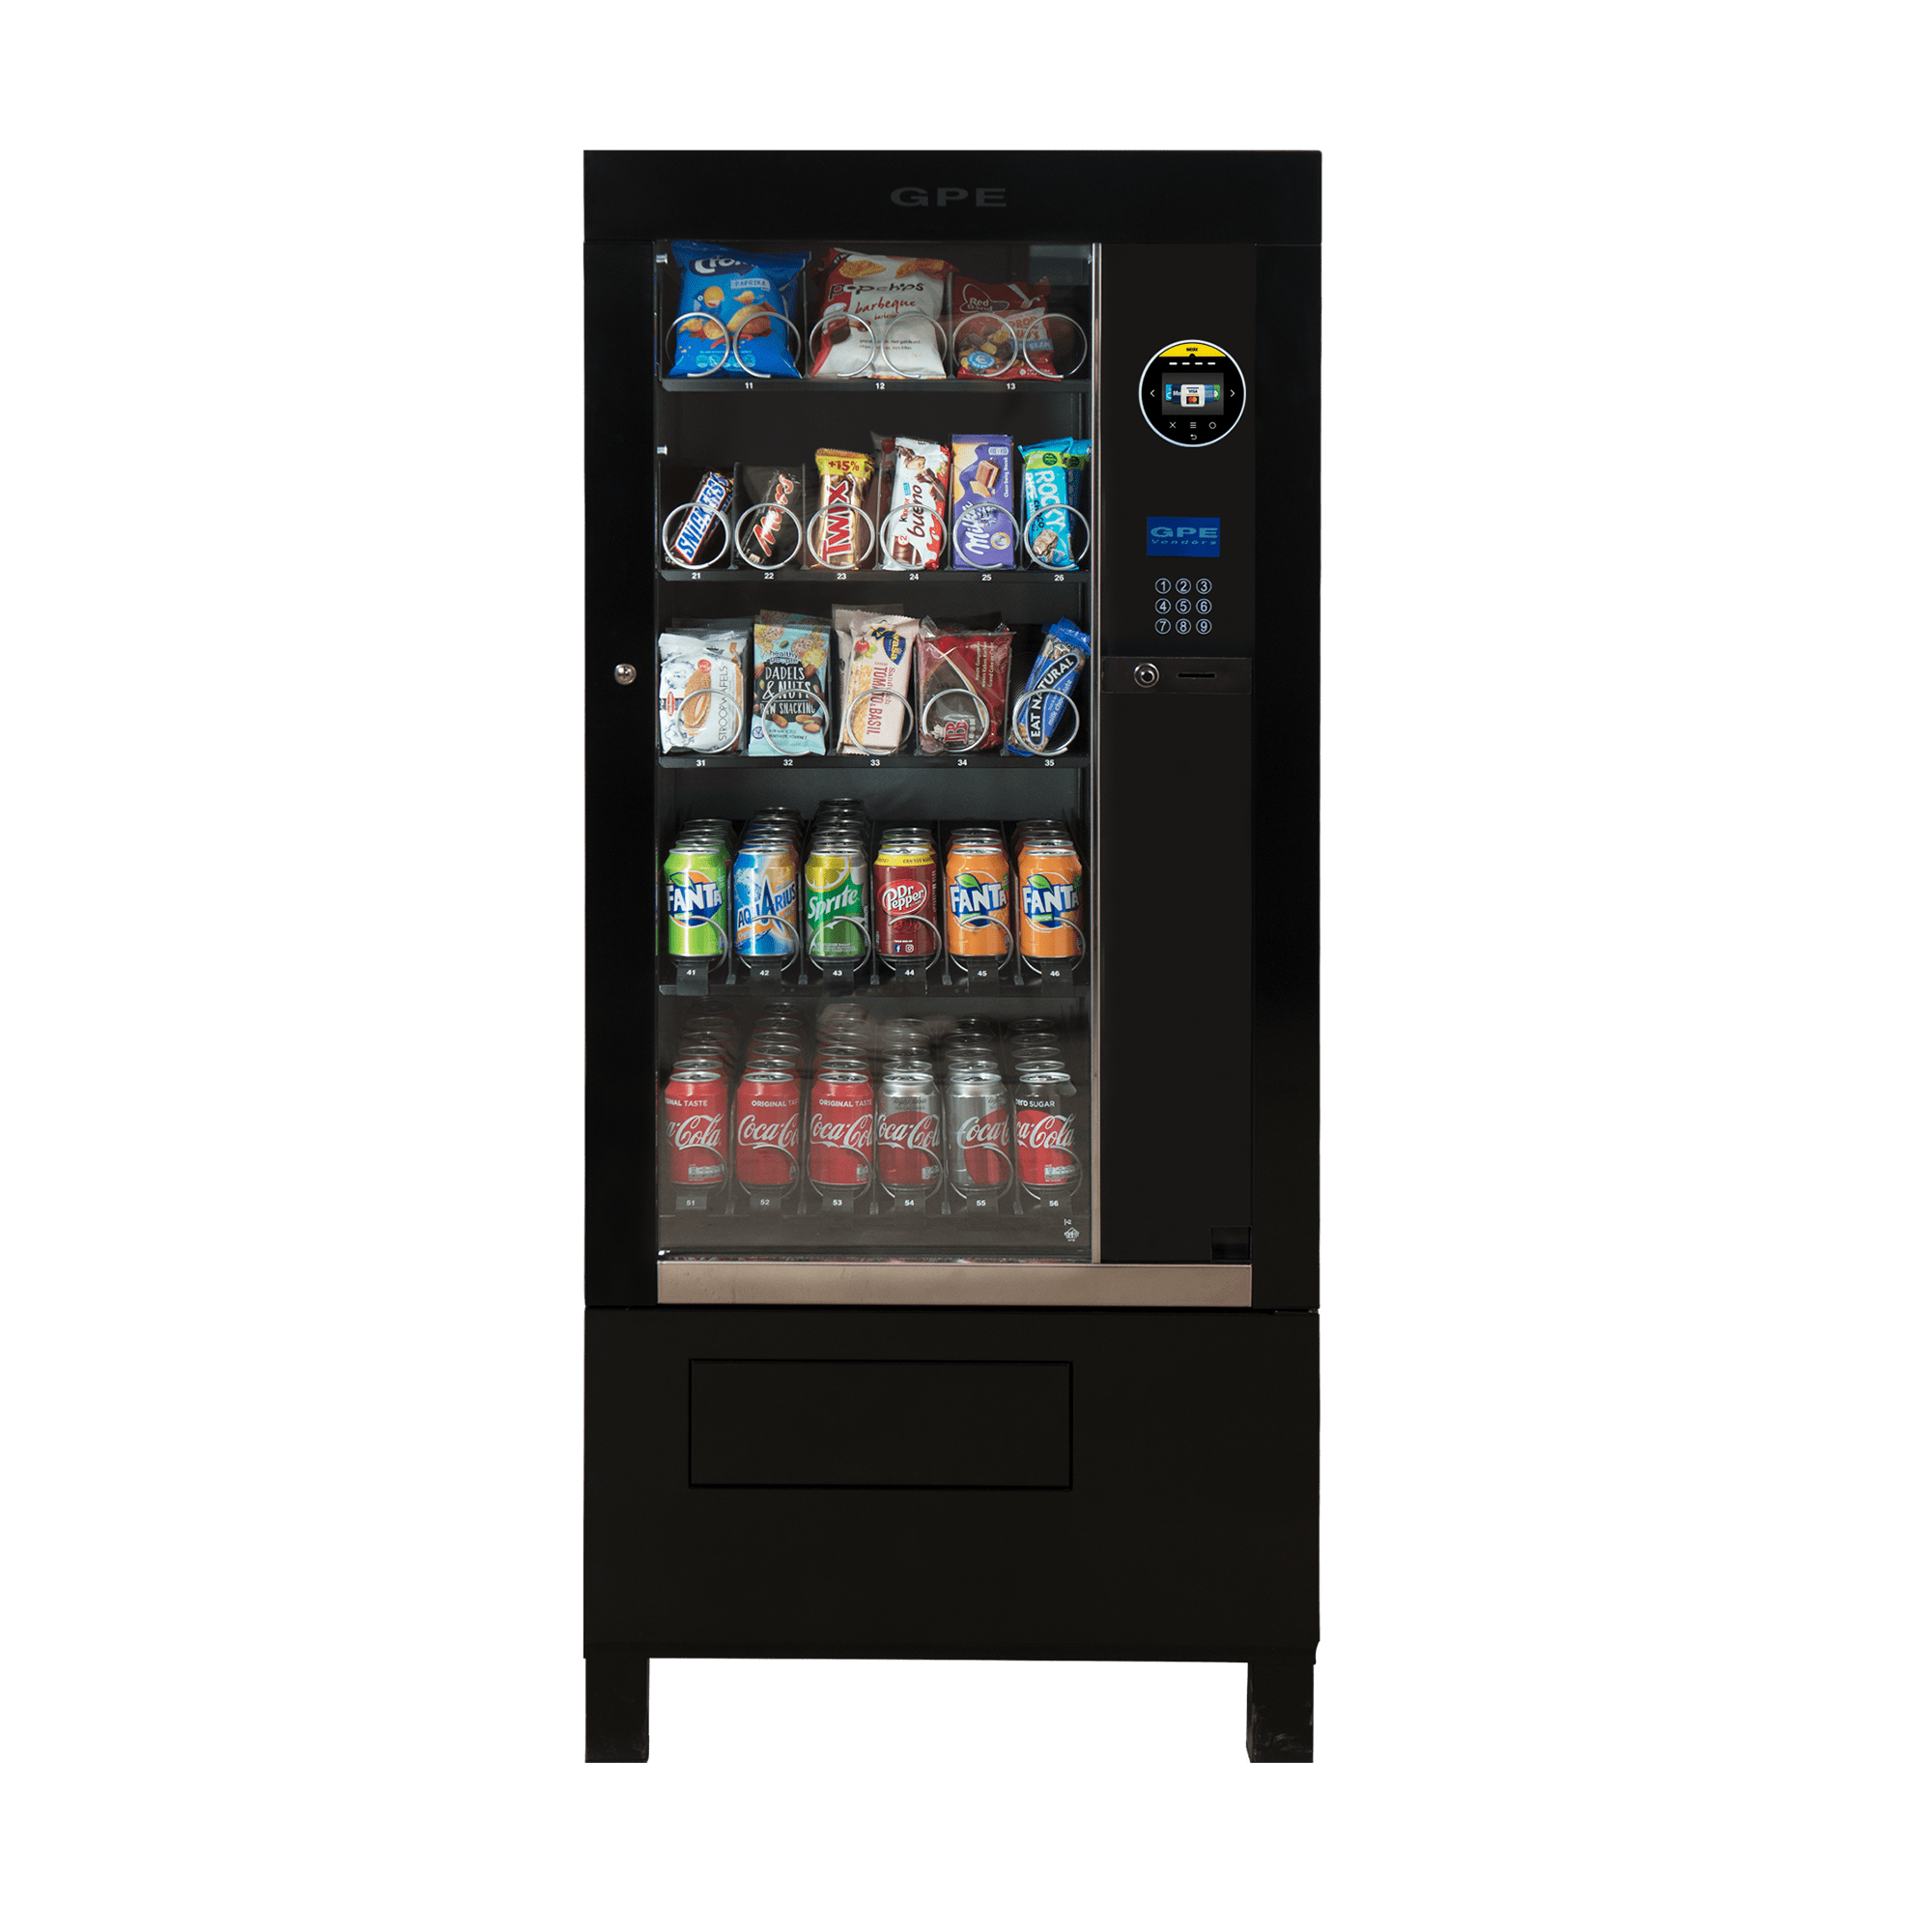 GPE 25 Combi-automaat | KoffiePartners